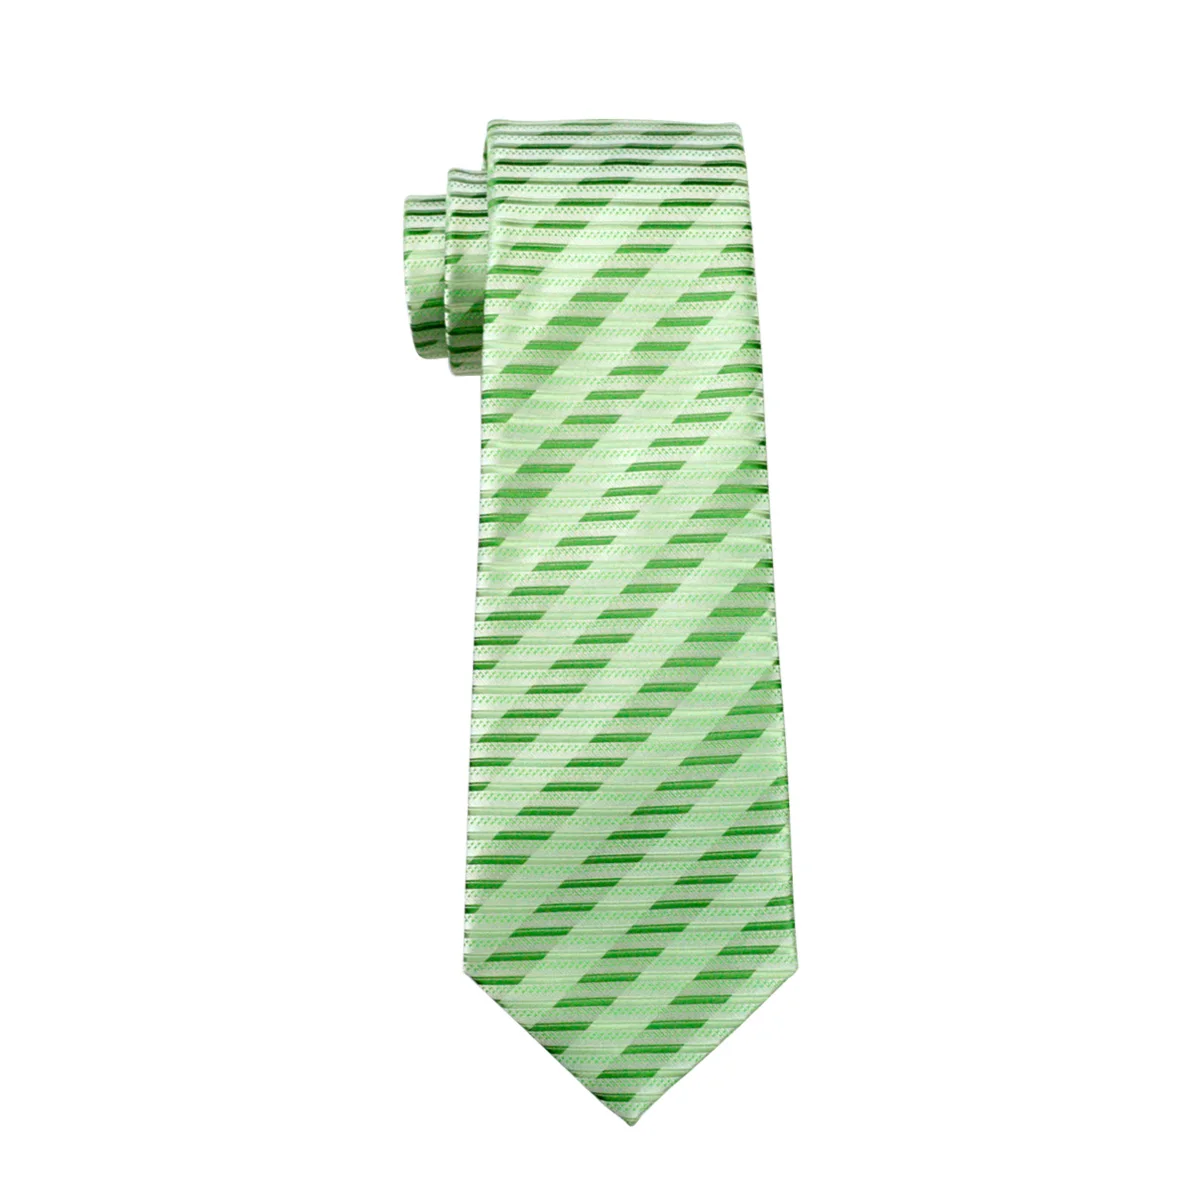 Dh-1062 Для мужчин S шелковый галстук зеленый полосатый галстук 100% шелк жаккард Галстуки для Для мужчин Бизнес Свадебная нарядная одежда